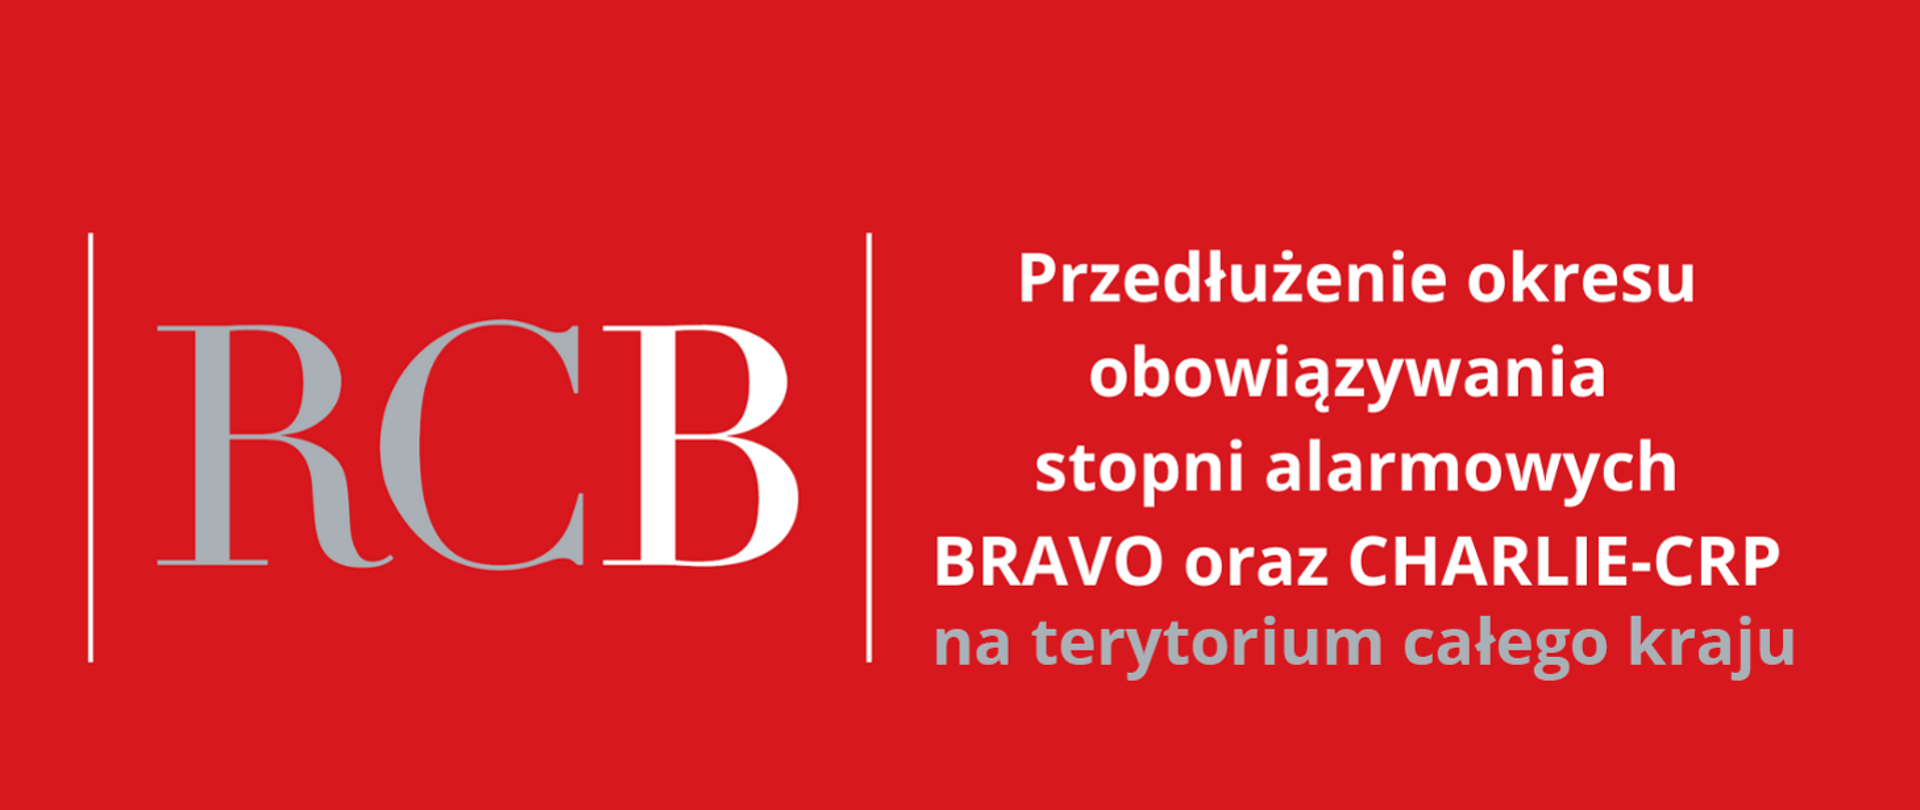 Grafika w kolorze czerwonym z napisami "RCB" oraz "Przedłużenie okresu obowiązywania stopni alarmowych BRAVO oraz CHARLIE-CRP na terytorium kraju"